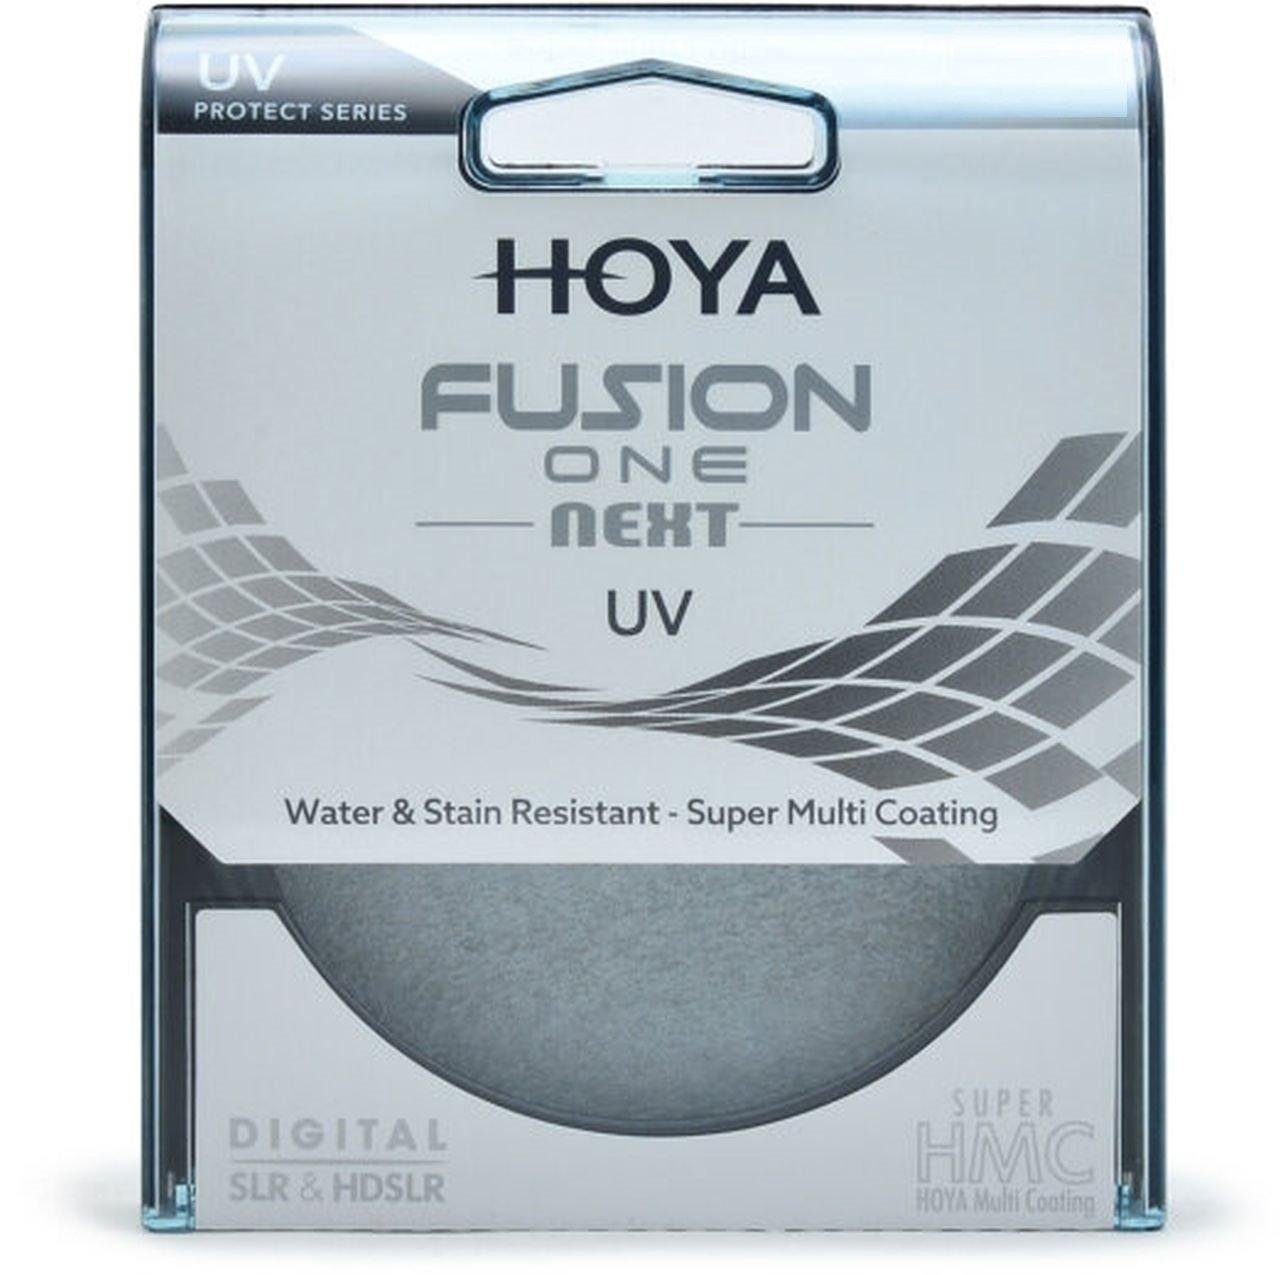 Hoya Fusion ONE Next UV-Filter 49mm Objektivzubehör